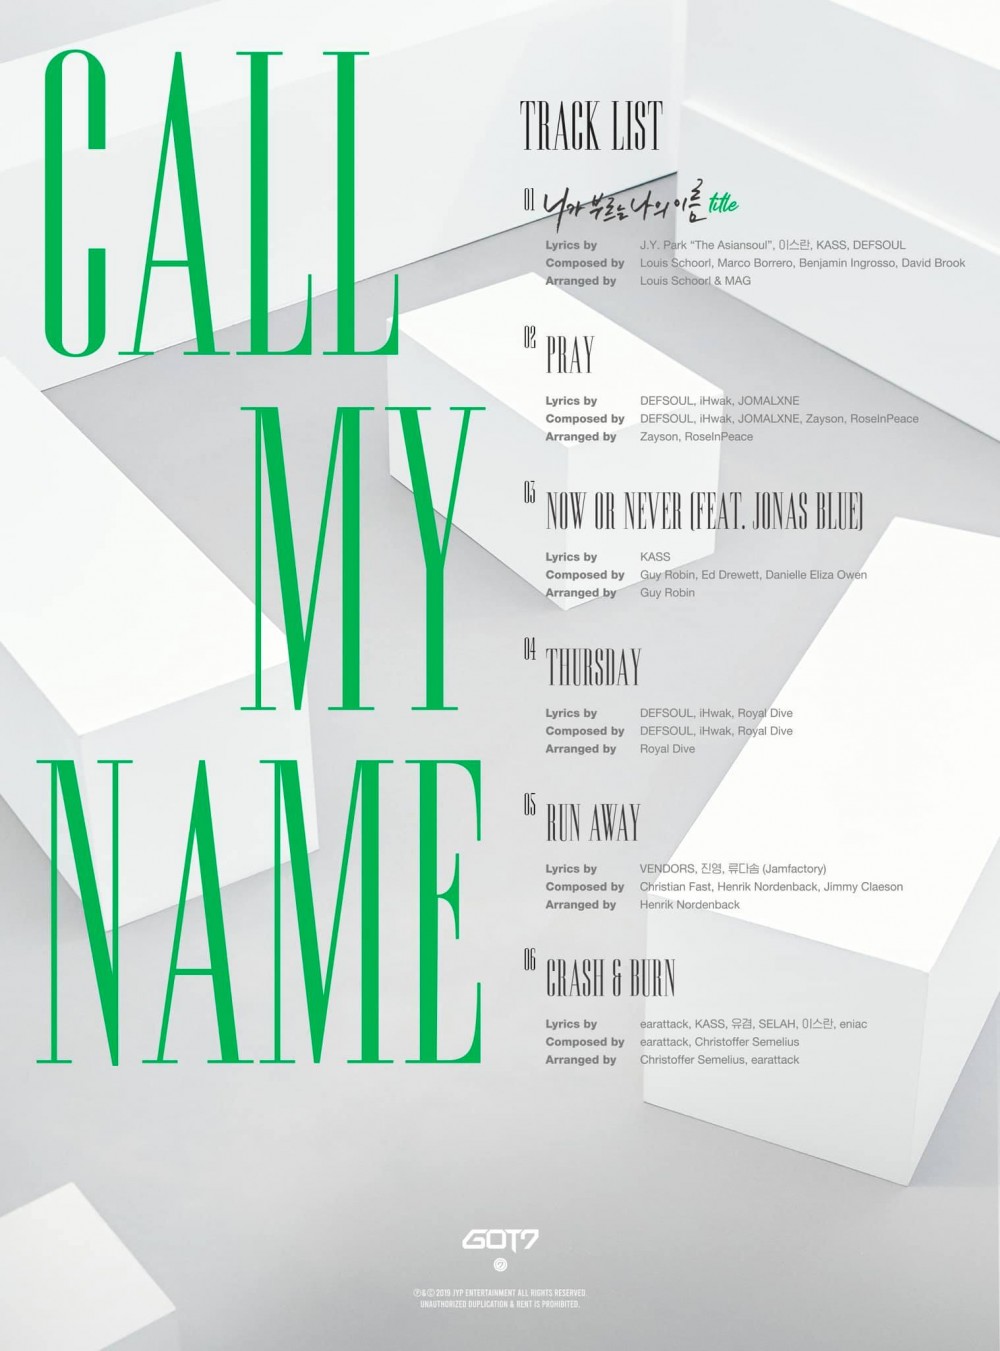 [РЕЛИЗ] GOT7 представили танцевальную версию клипа на песню "You Calling My Name"